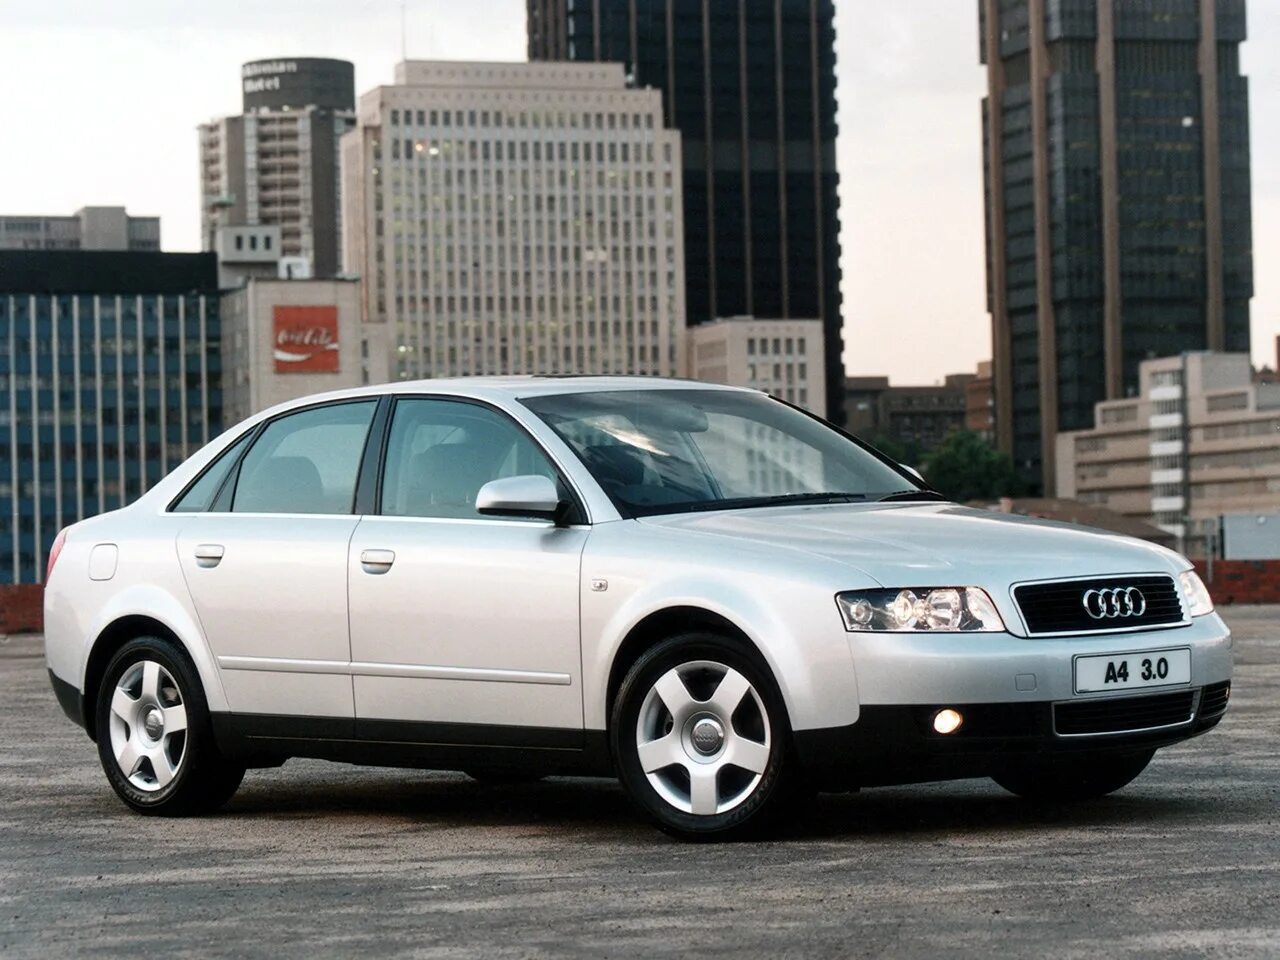 Audi a4 b6 2001. Audi a4 [b6] 2000-2004. Audi a4 b6 2004. Audi a4 b6 2000.